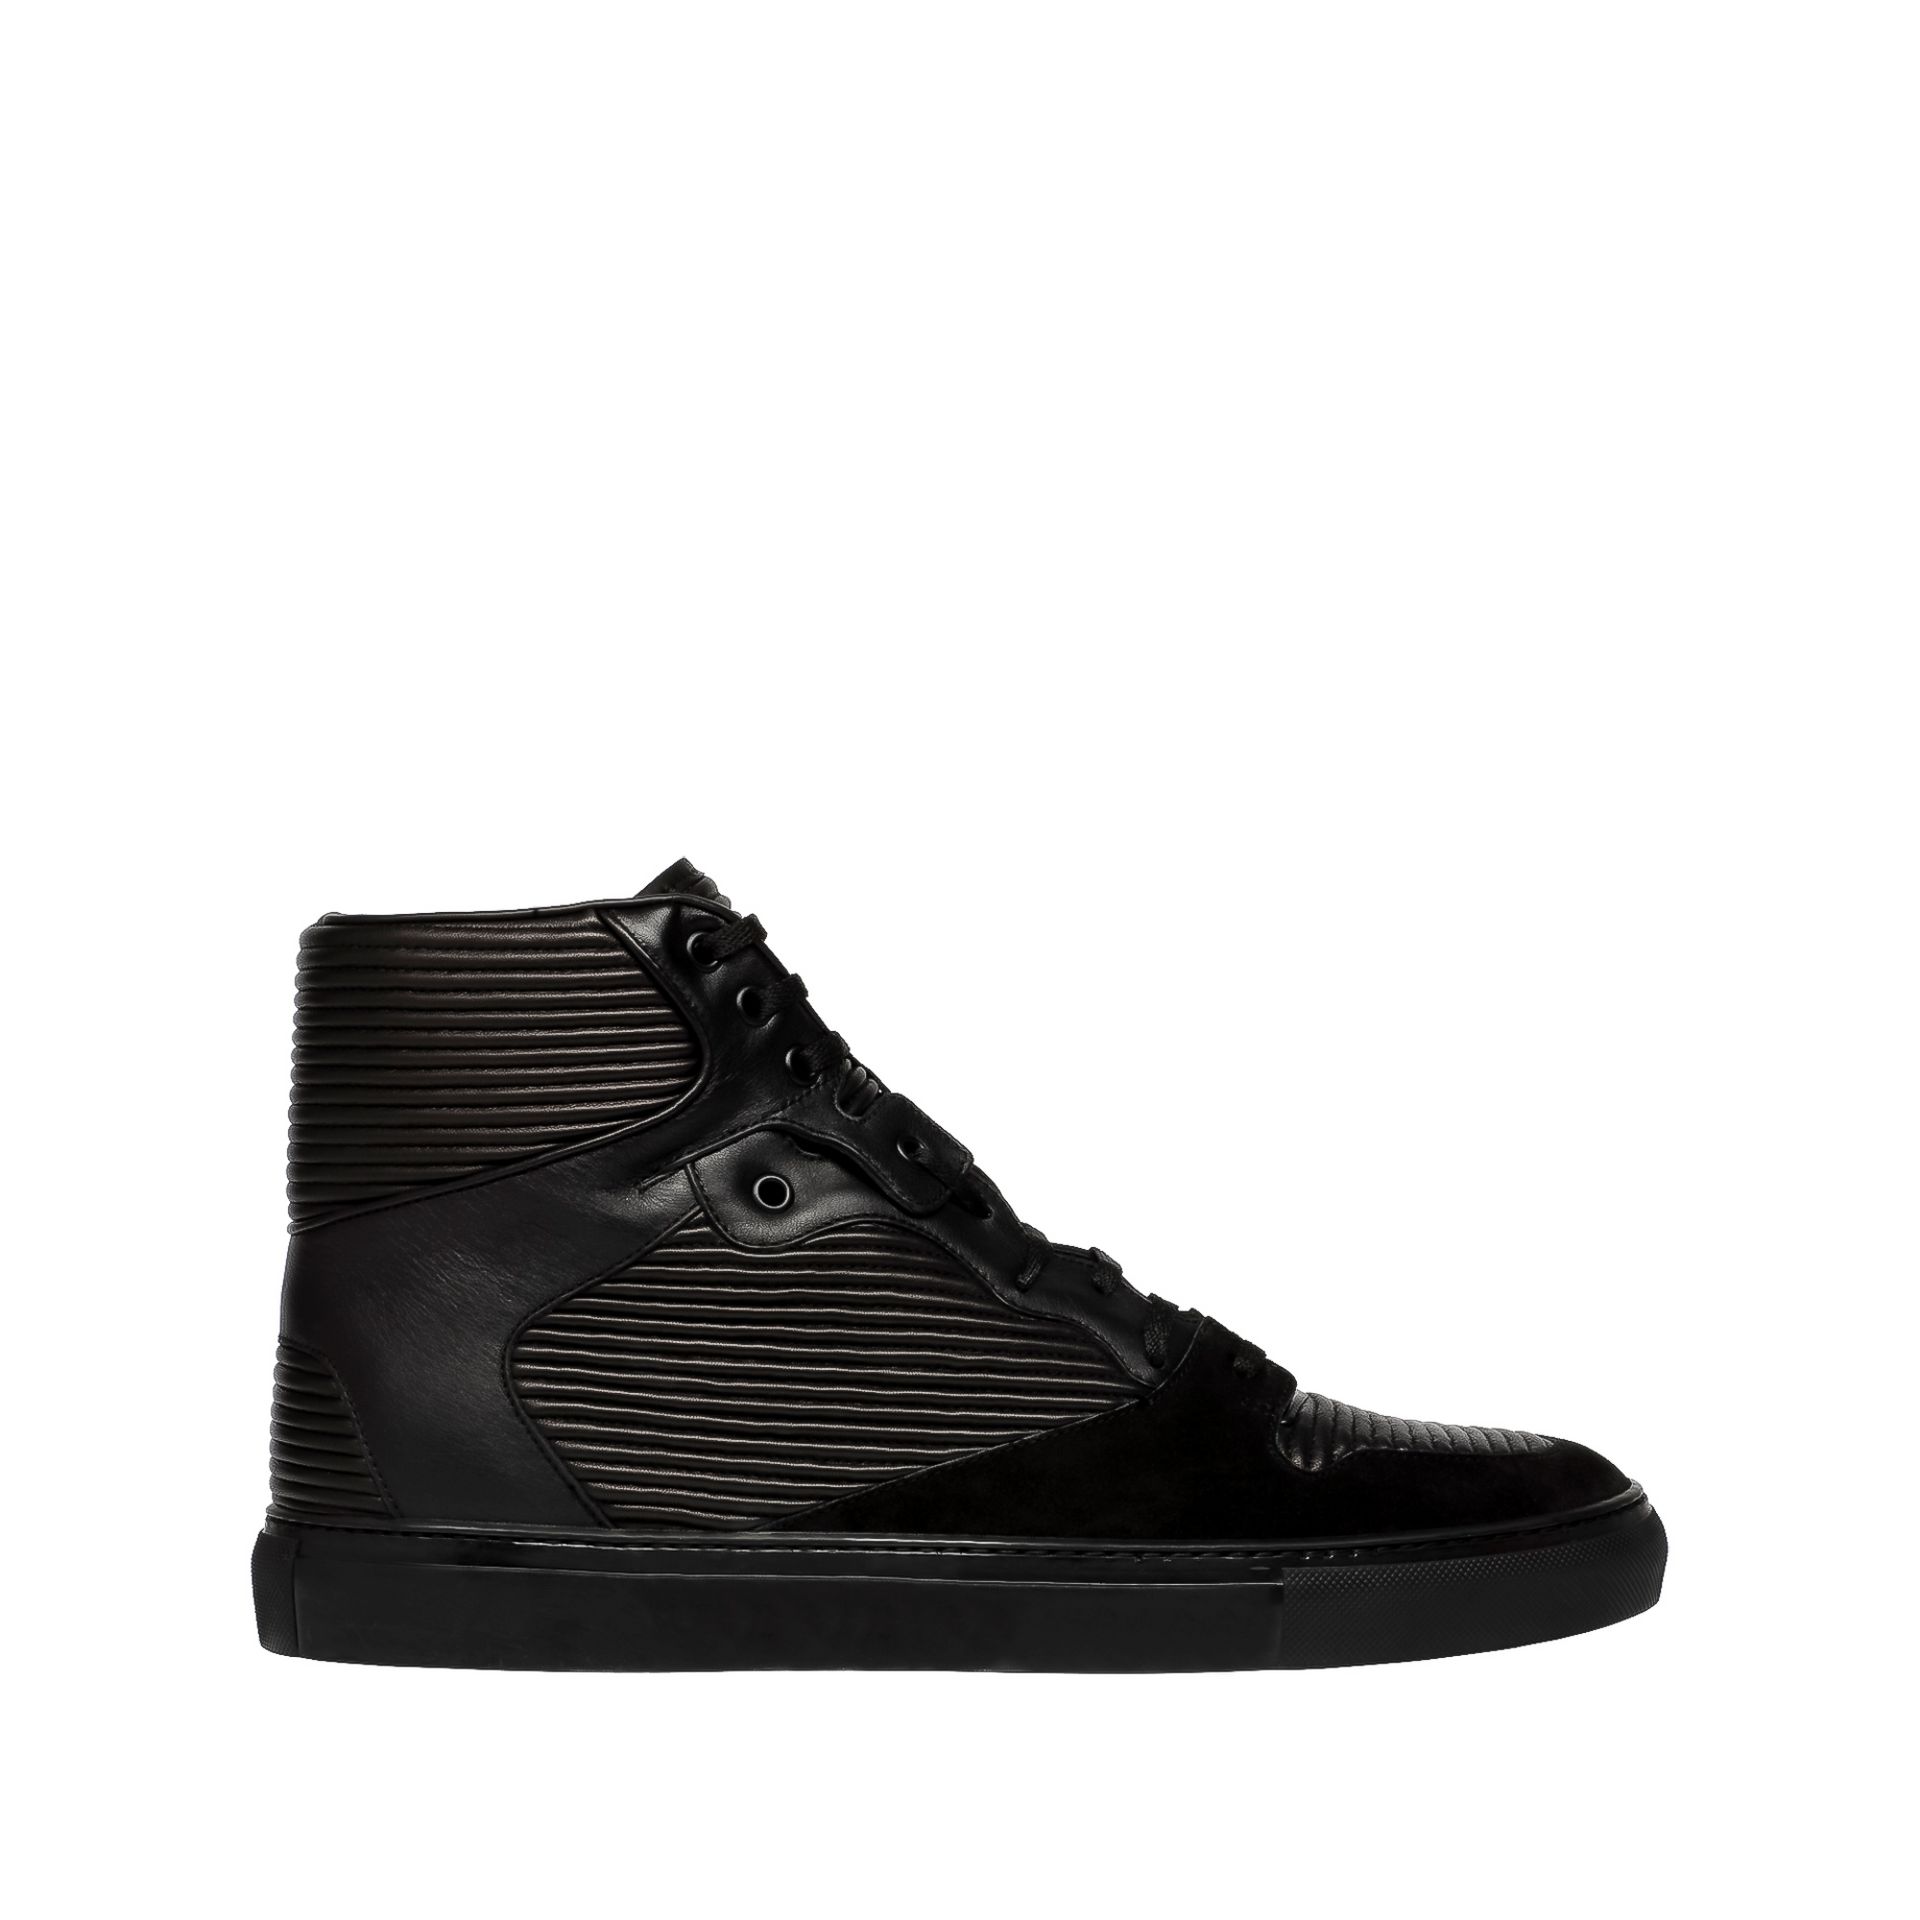 Balenciaga Cotes Monochrome High Sneakers - Men's Sneaker